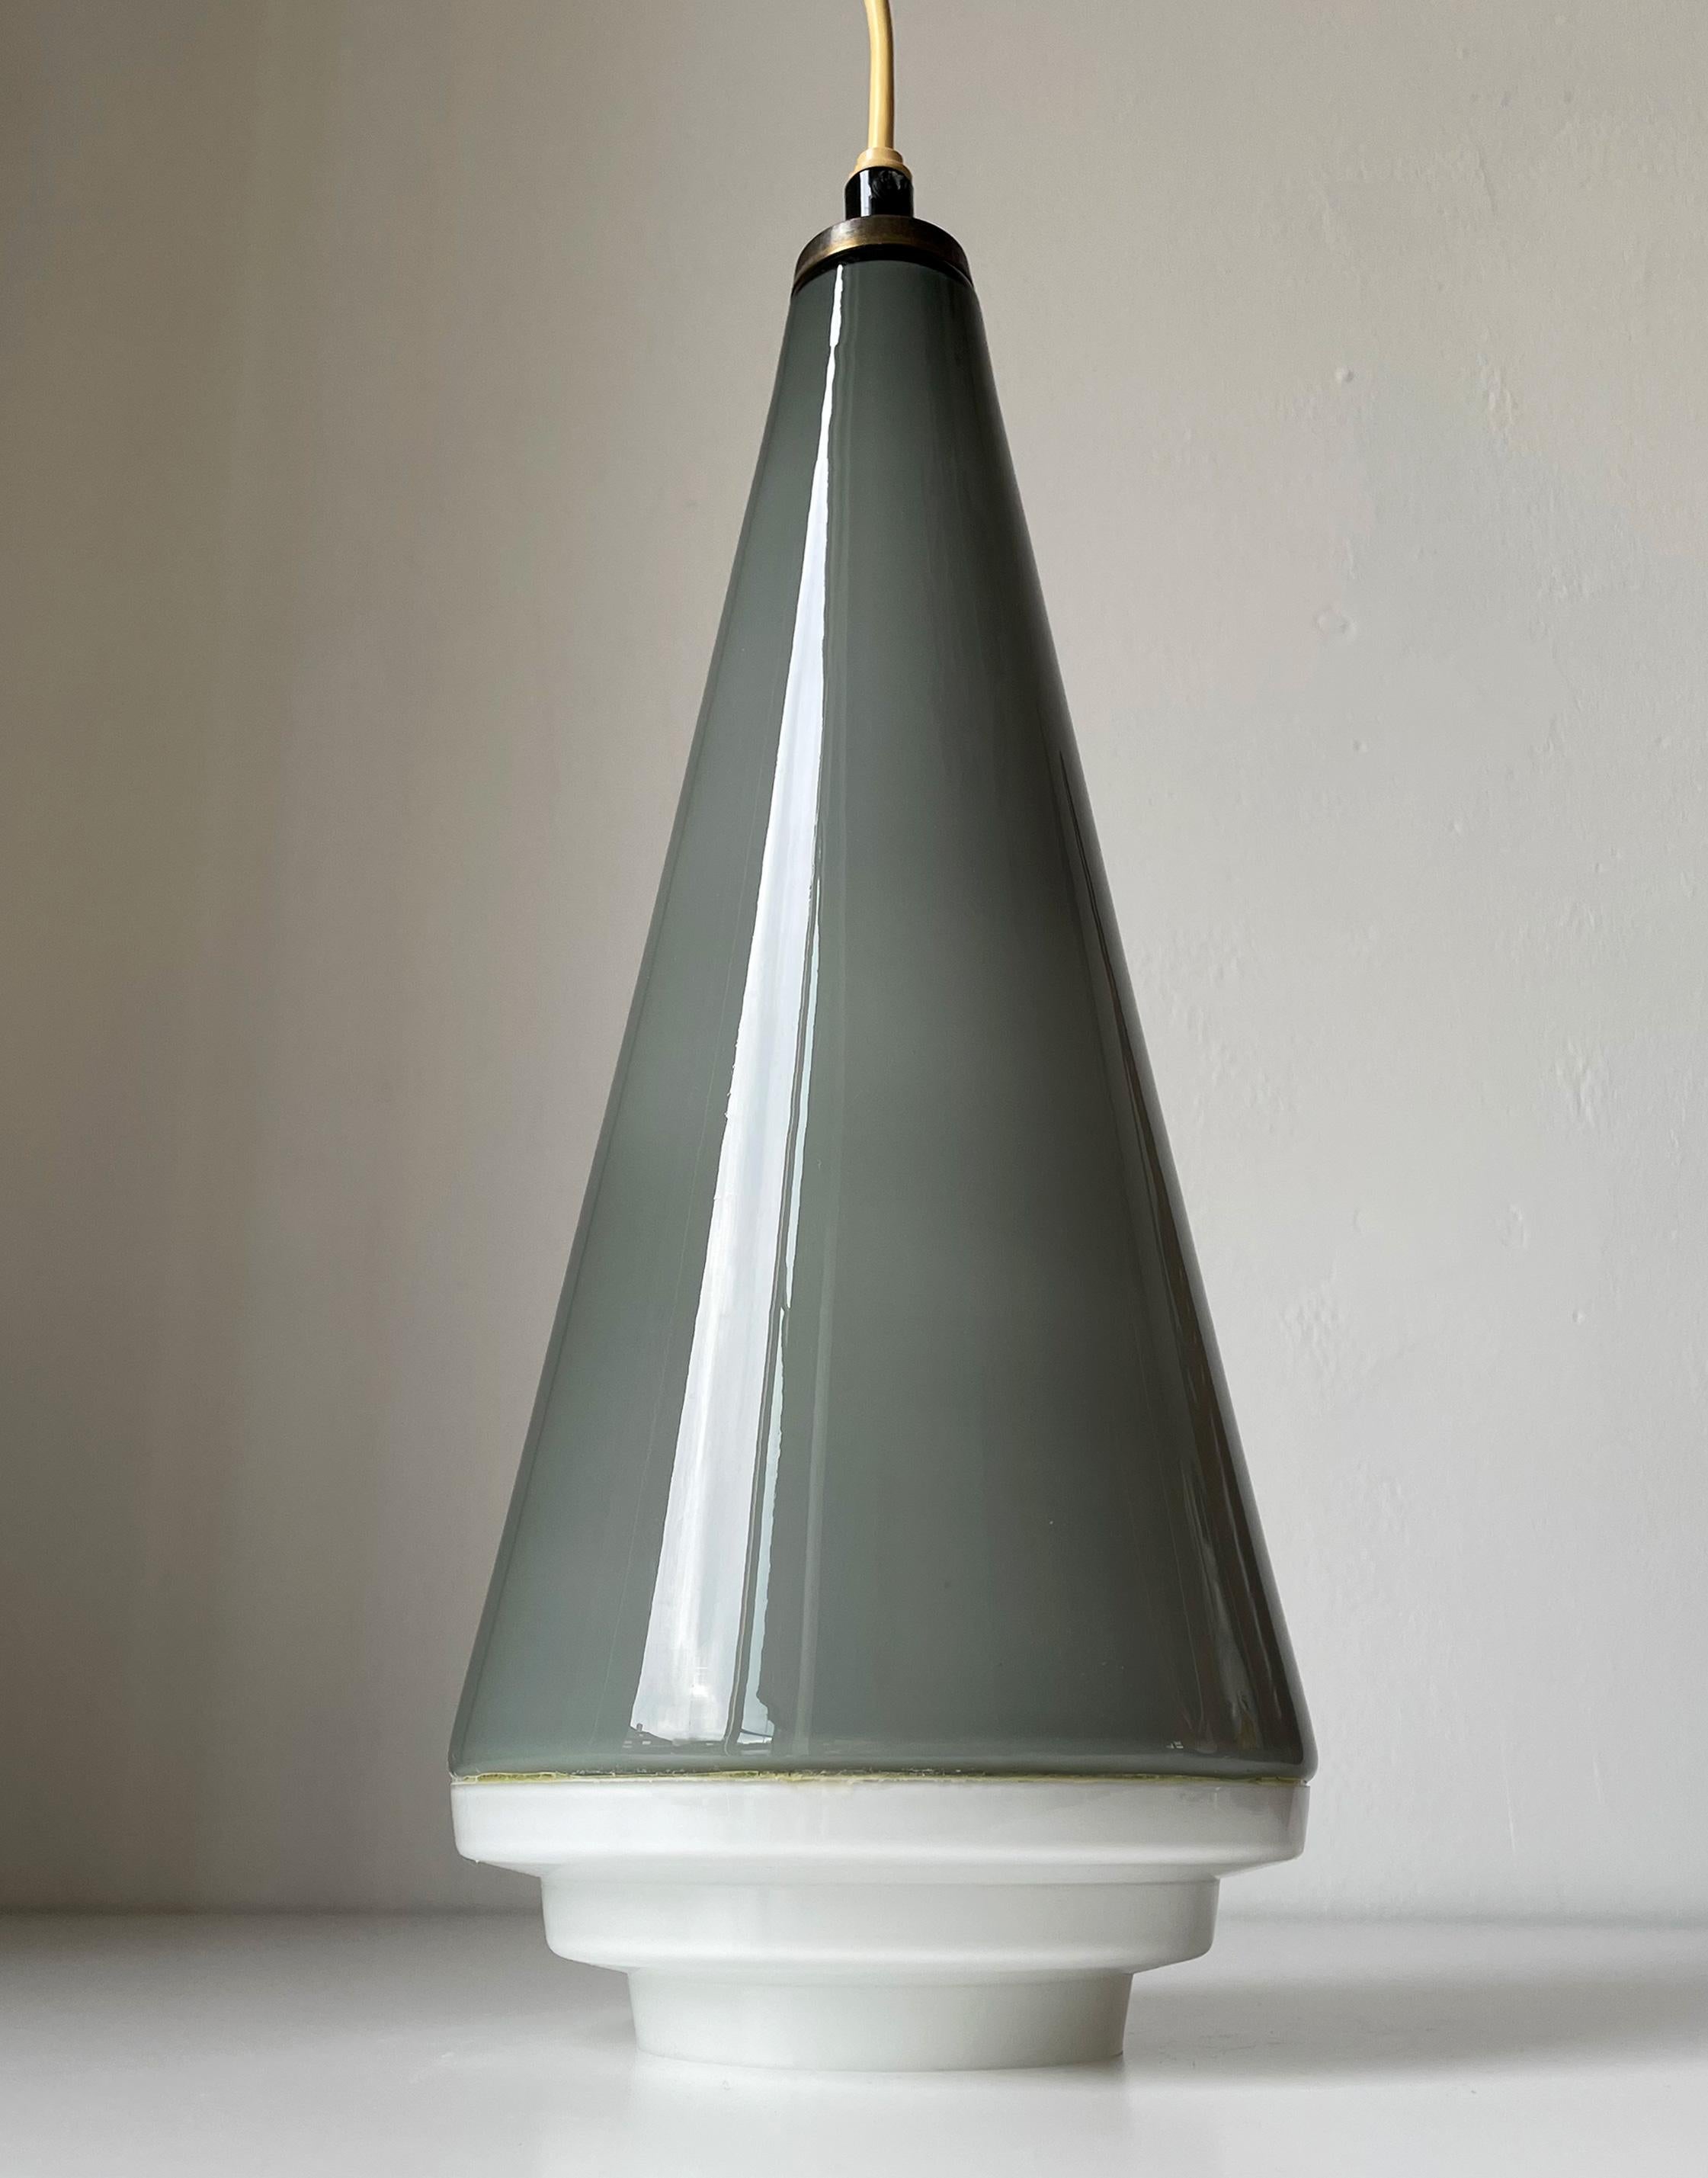 Plafonnier en verre conique de style européen des années 1950. Grande suspension conique en verre gris fumé chaud sur fond blanc avec base en verre blanc de style art déco. Raccord d'origine pour ampoule E27. Câblage sur demande. Belle condition